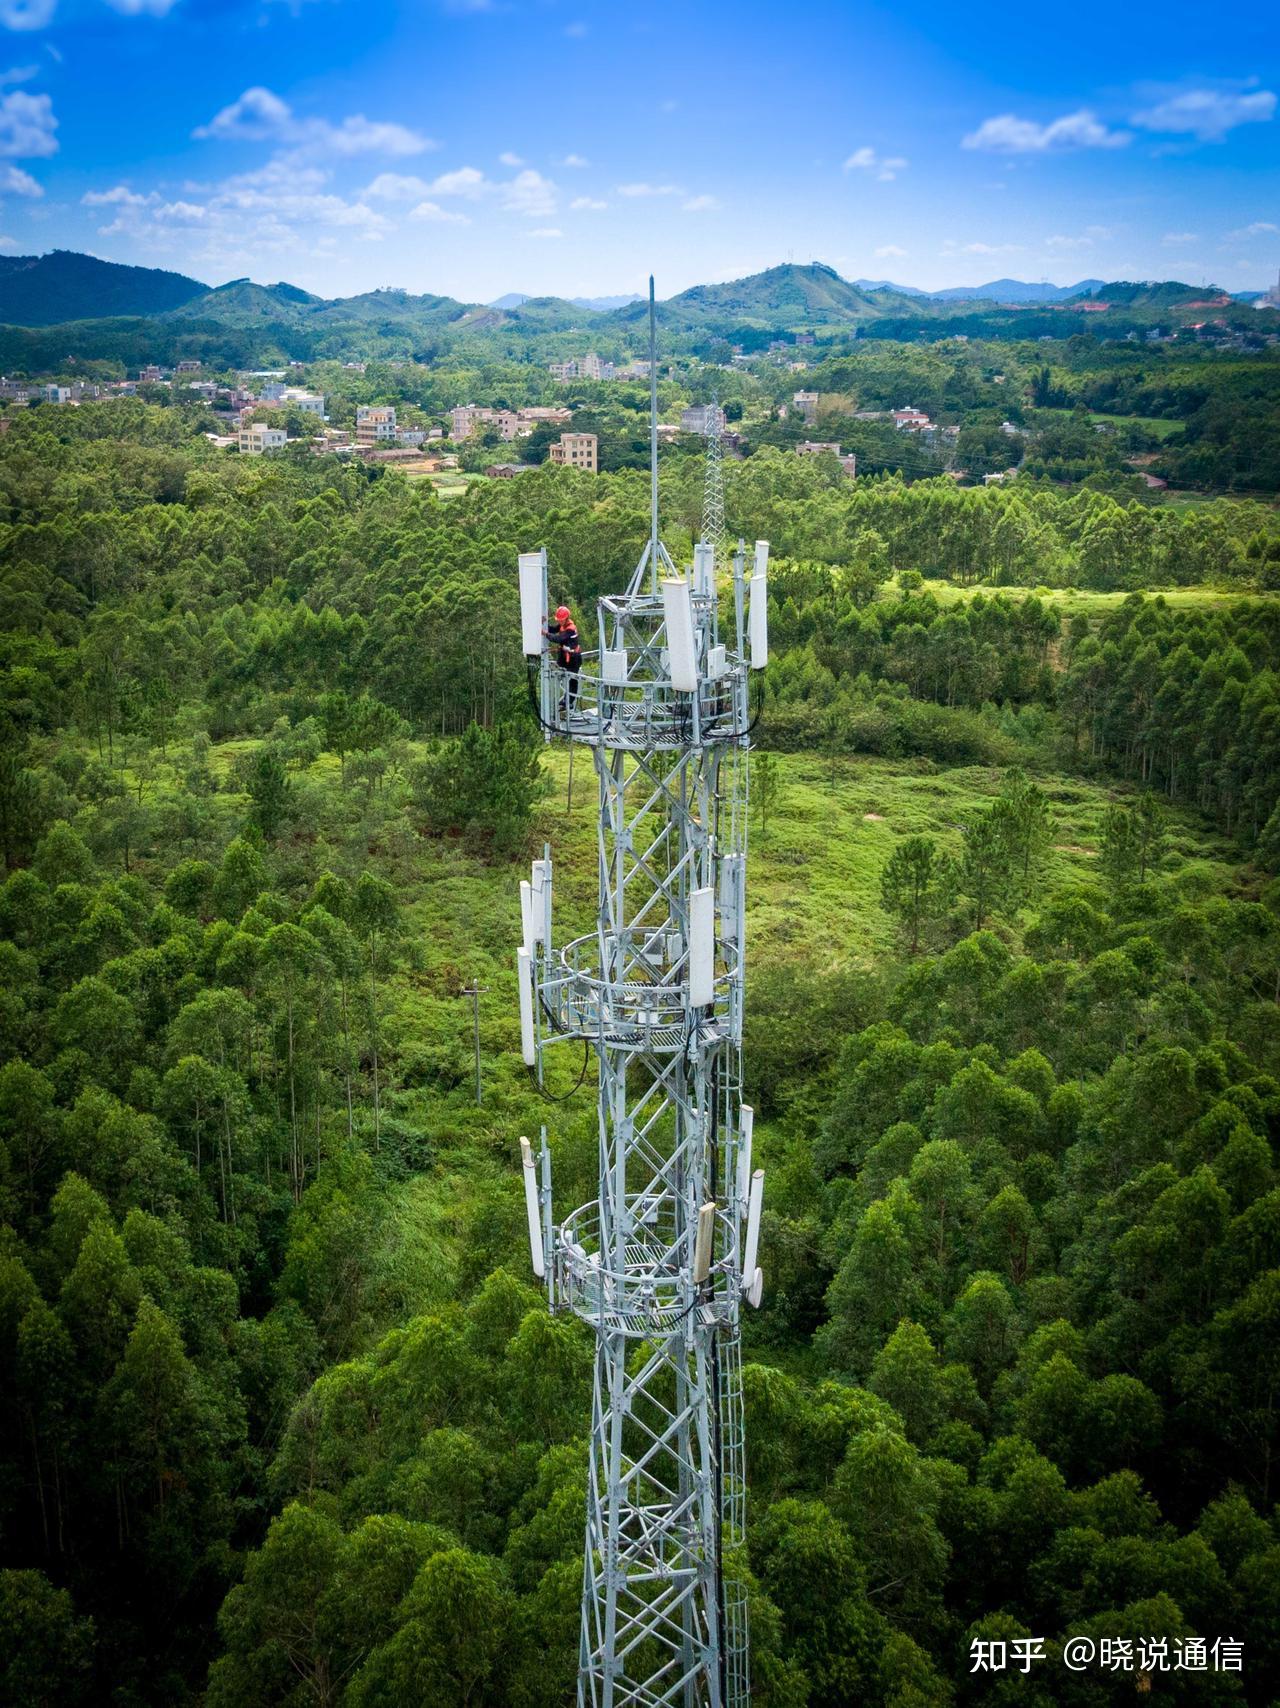 广州 5G 网络现状：信号覆盖不全，网速如蜗牛，用户体验差  第6张